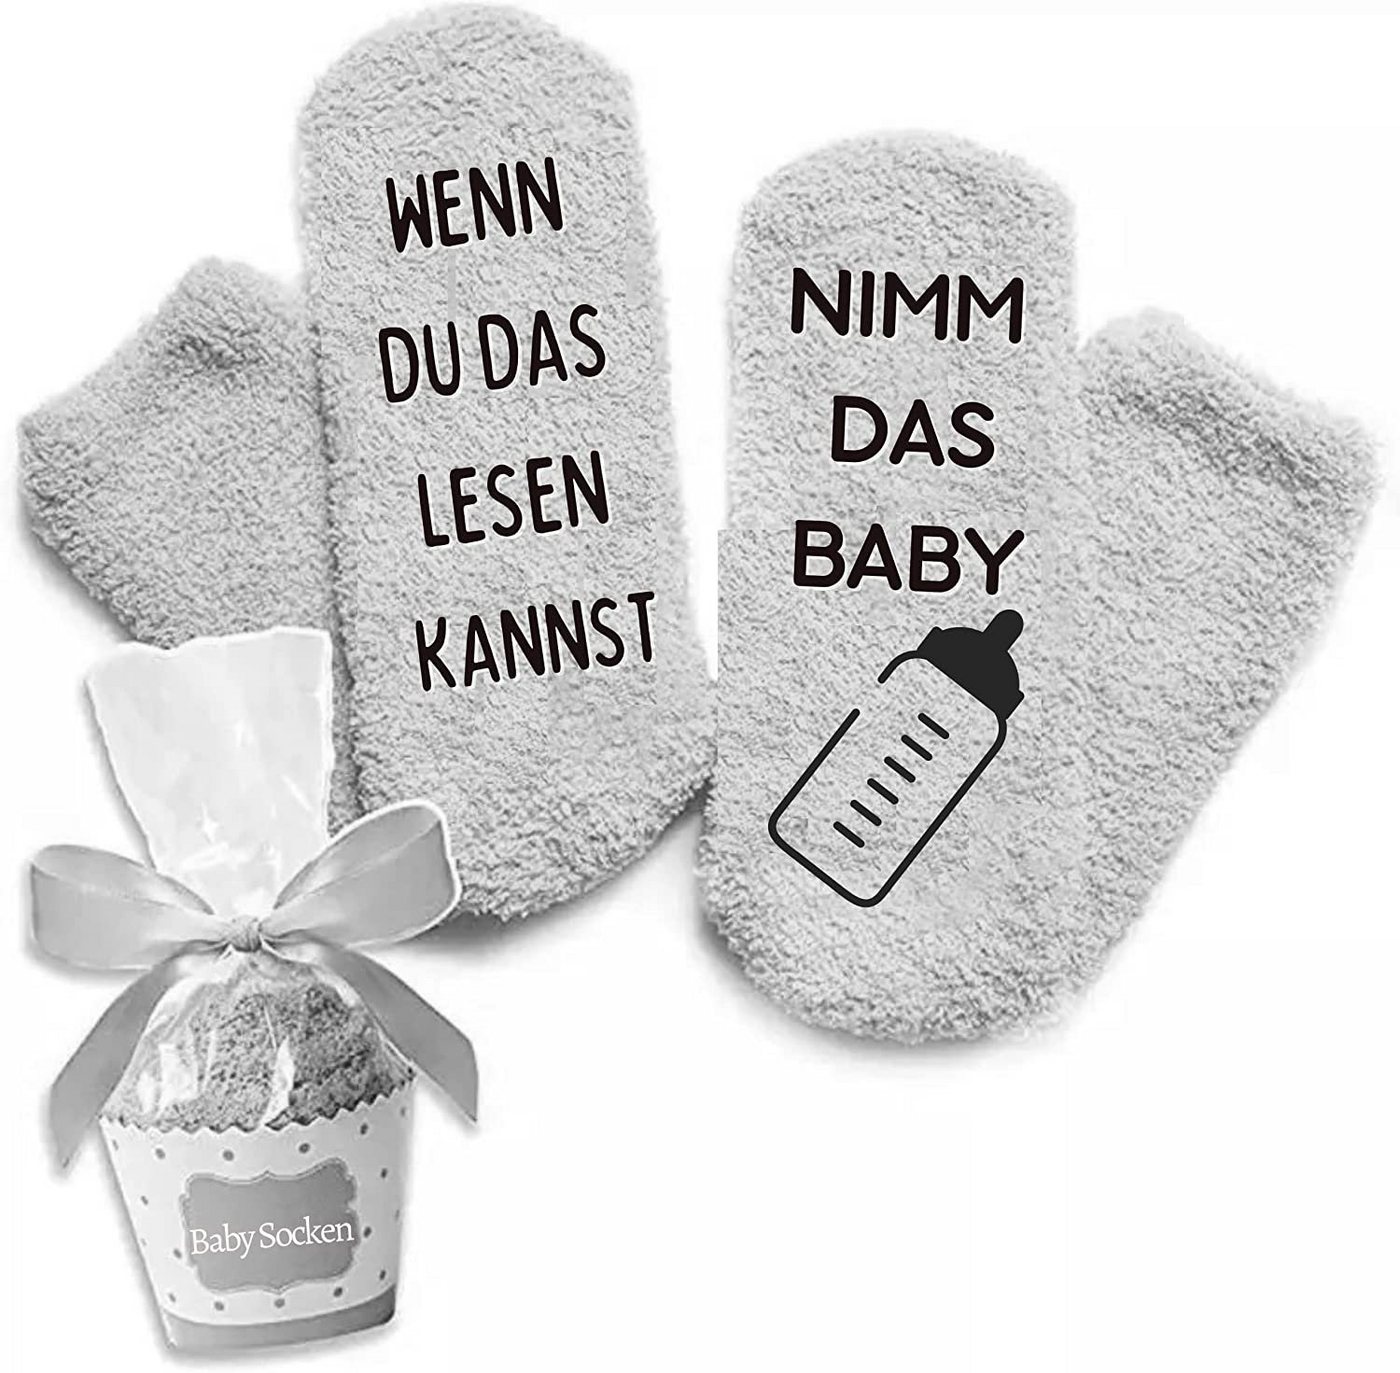 Rocking Socks ABS-Socken Geschenk Socken für Frauen und Männer Wenn du das lesen kannst Socken von Rocking Socks